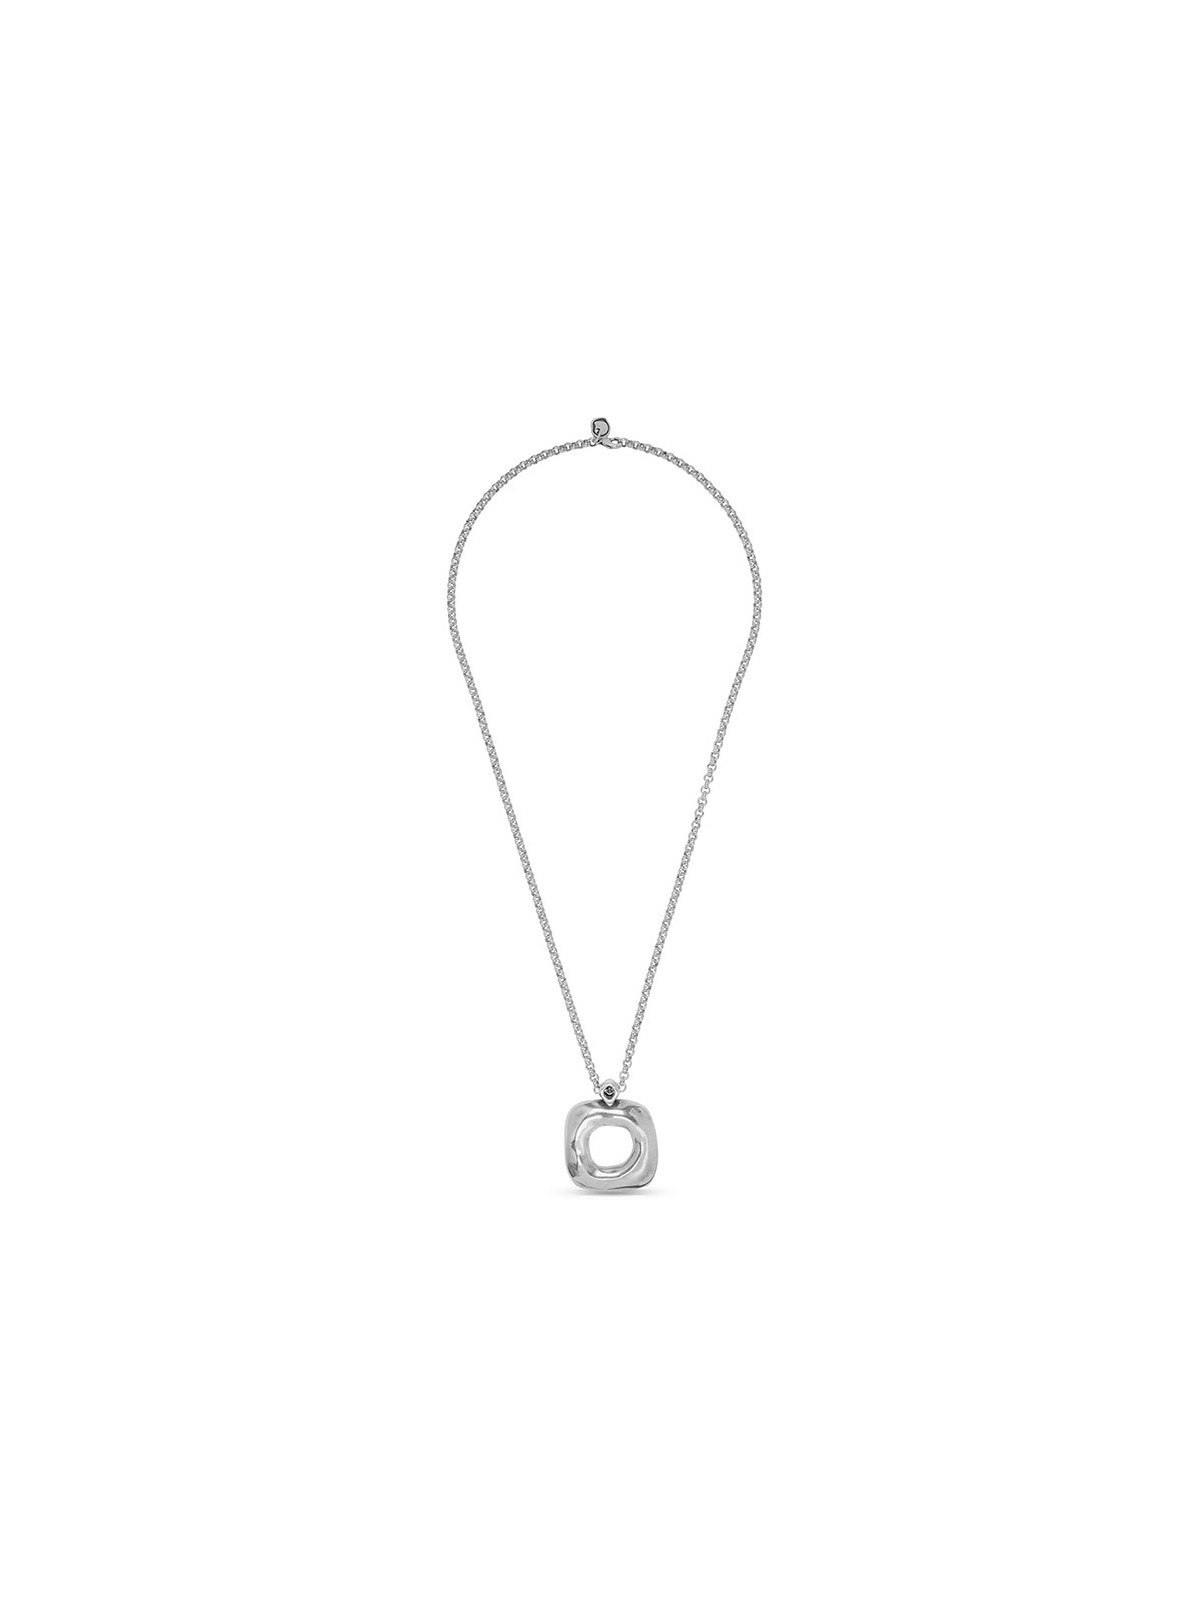 Bijoux Ciclon avec chaîne et pendentif | 4 vue à plat | Tilleulmenthe boutique de mode femme en ligne